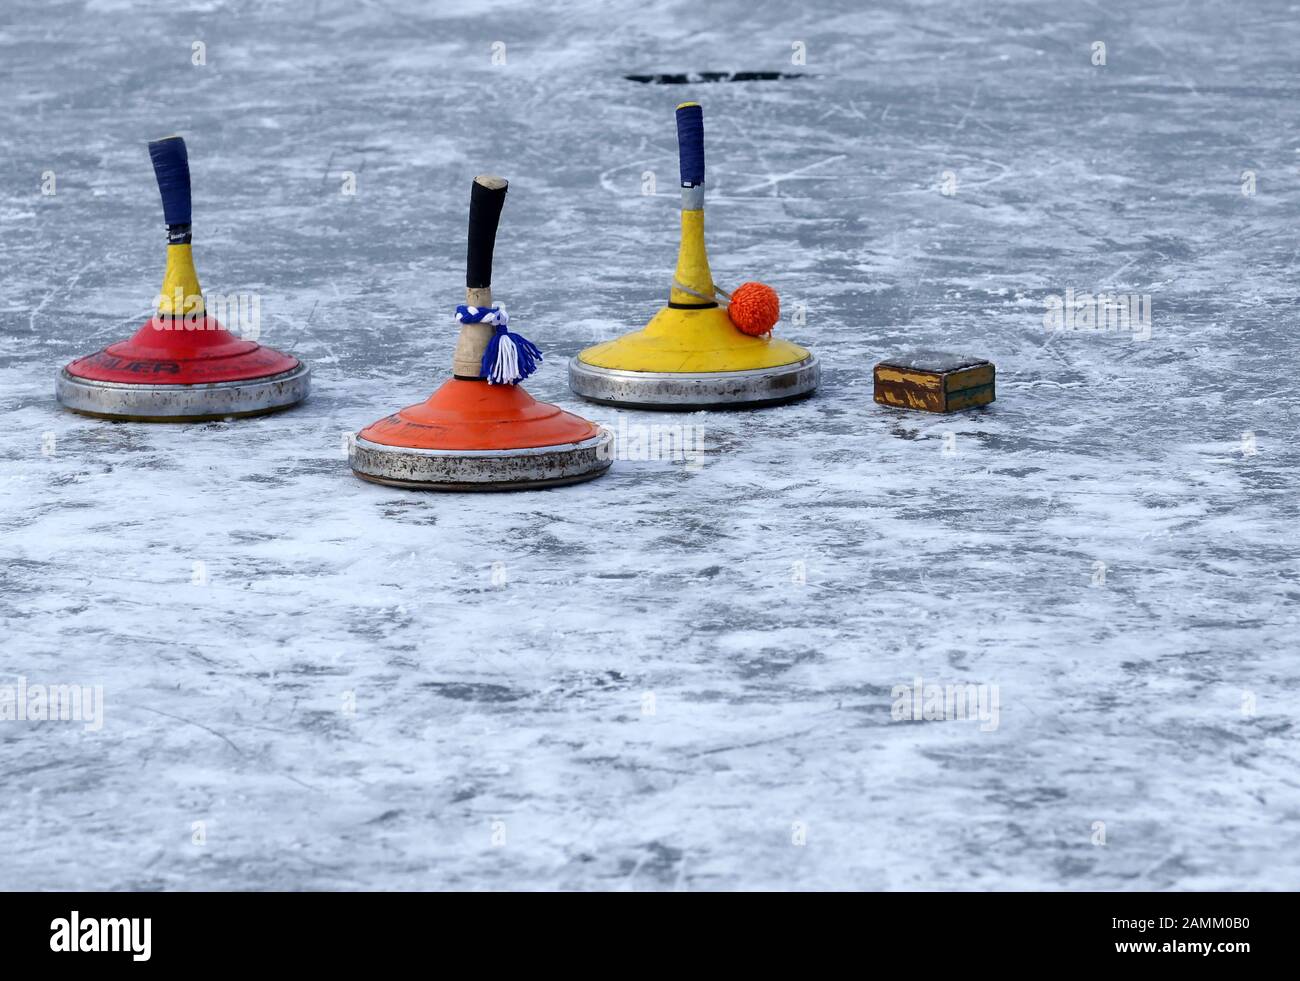 Sportivi ricreativi al curling sul lago Olching, nella foto tre bastoni e la nave. [traduzione automatizzata] Foto Stock